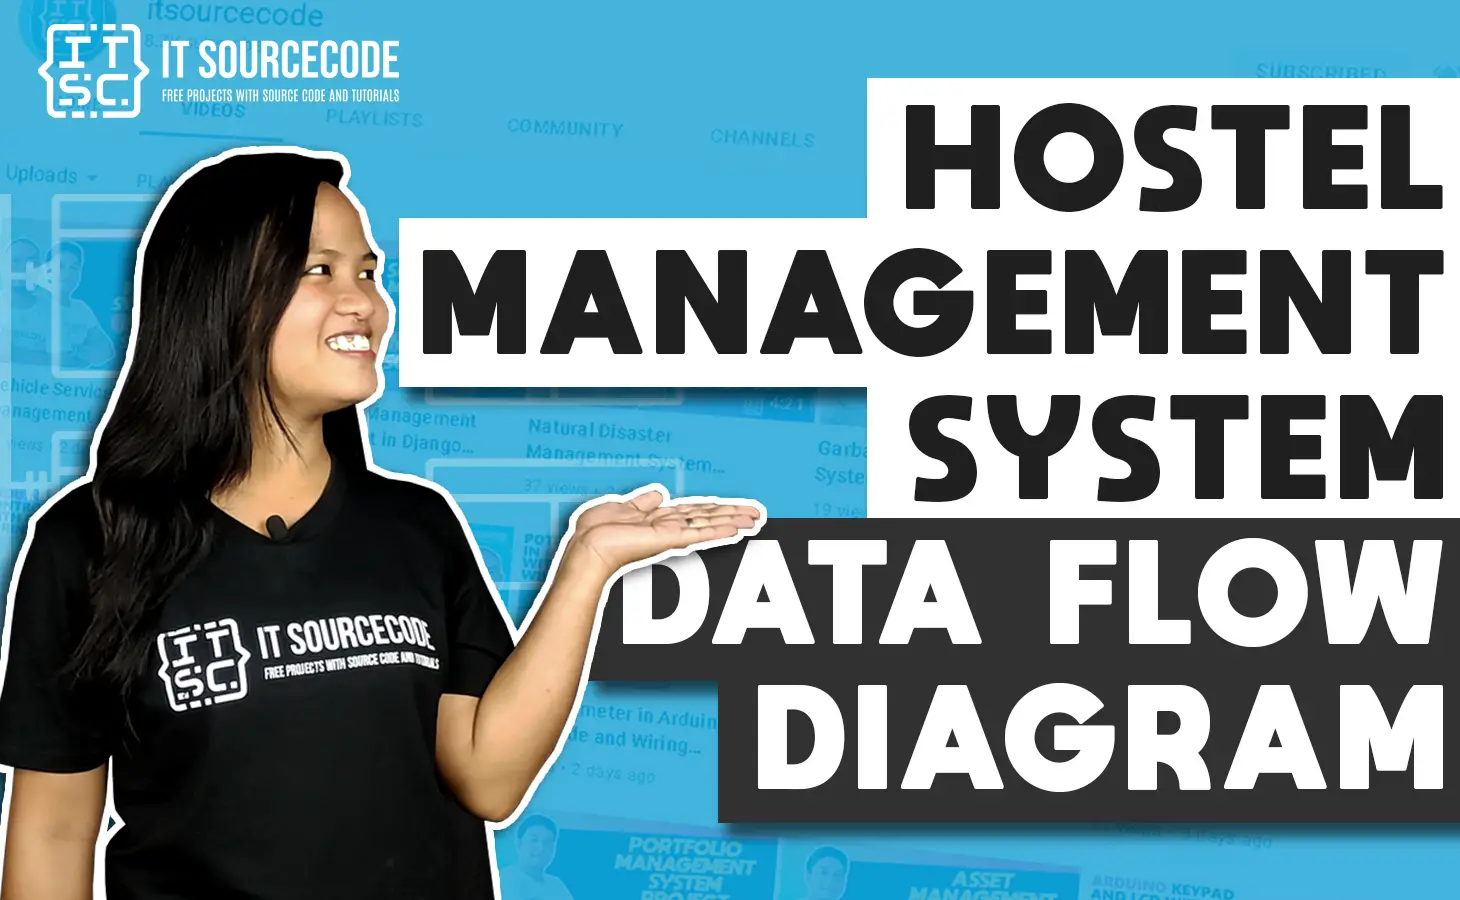 DFD Diagram for Hostel Management System